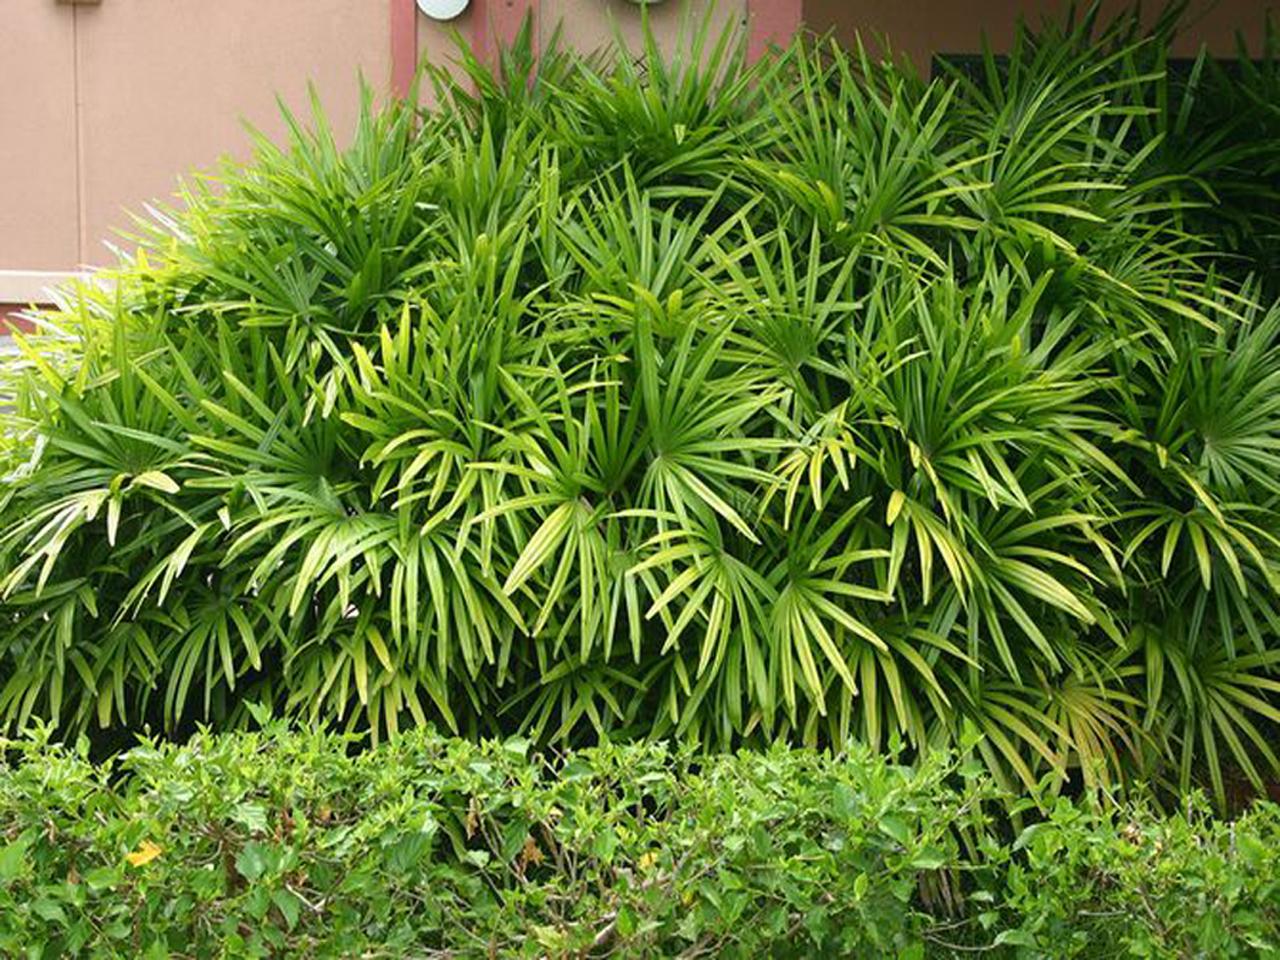 Пальма рапис (бамбуковая пальма) на улице